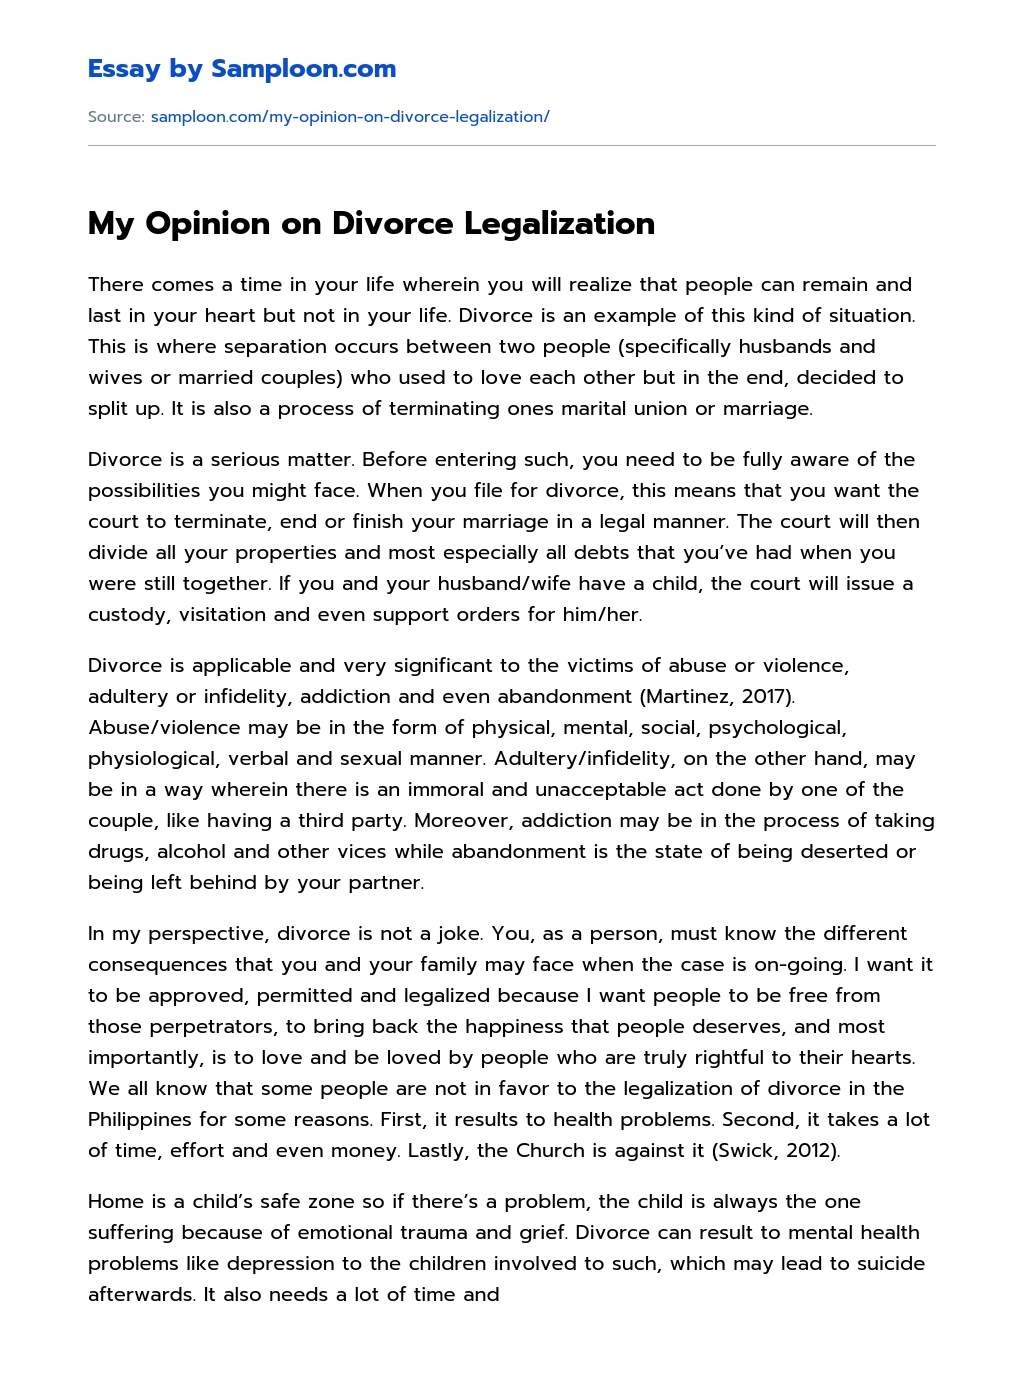 argumentative essay about divorce pdf